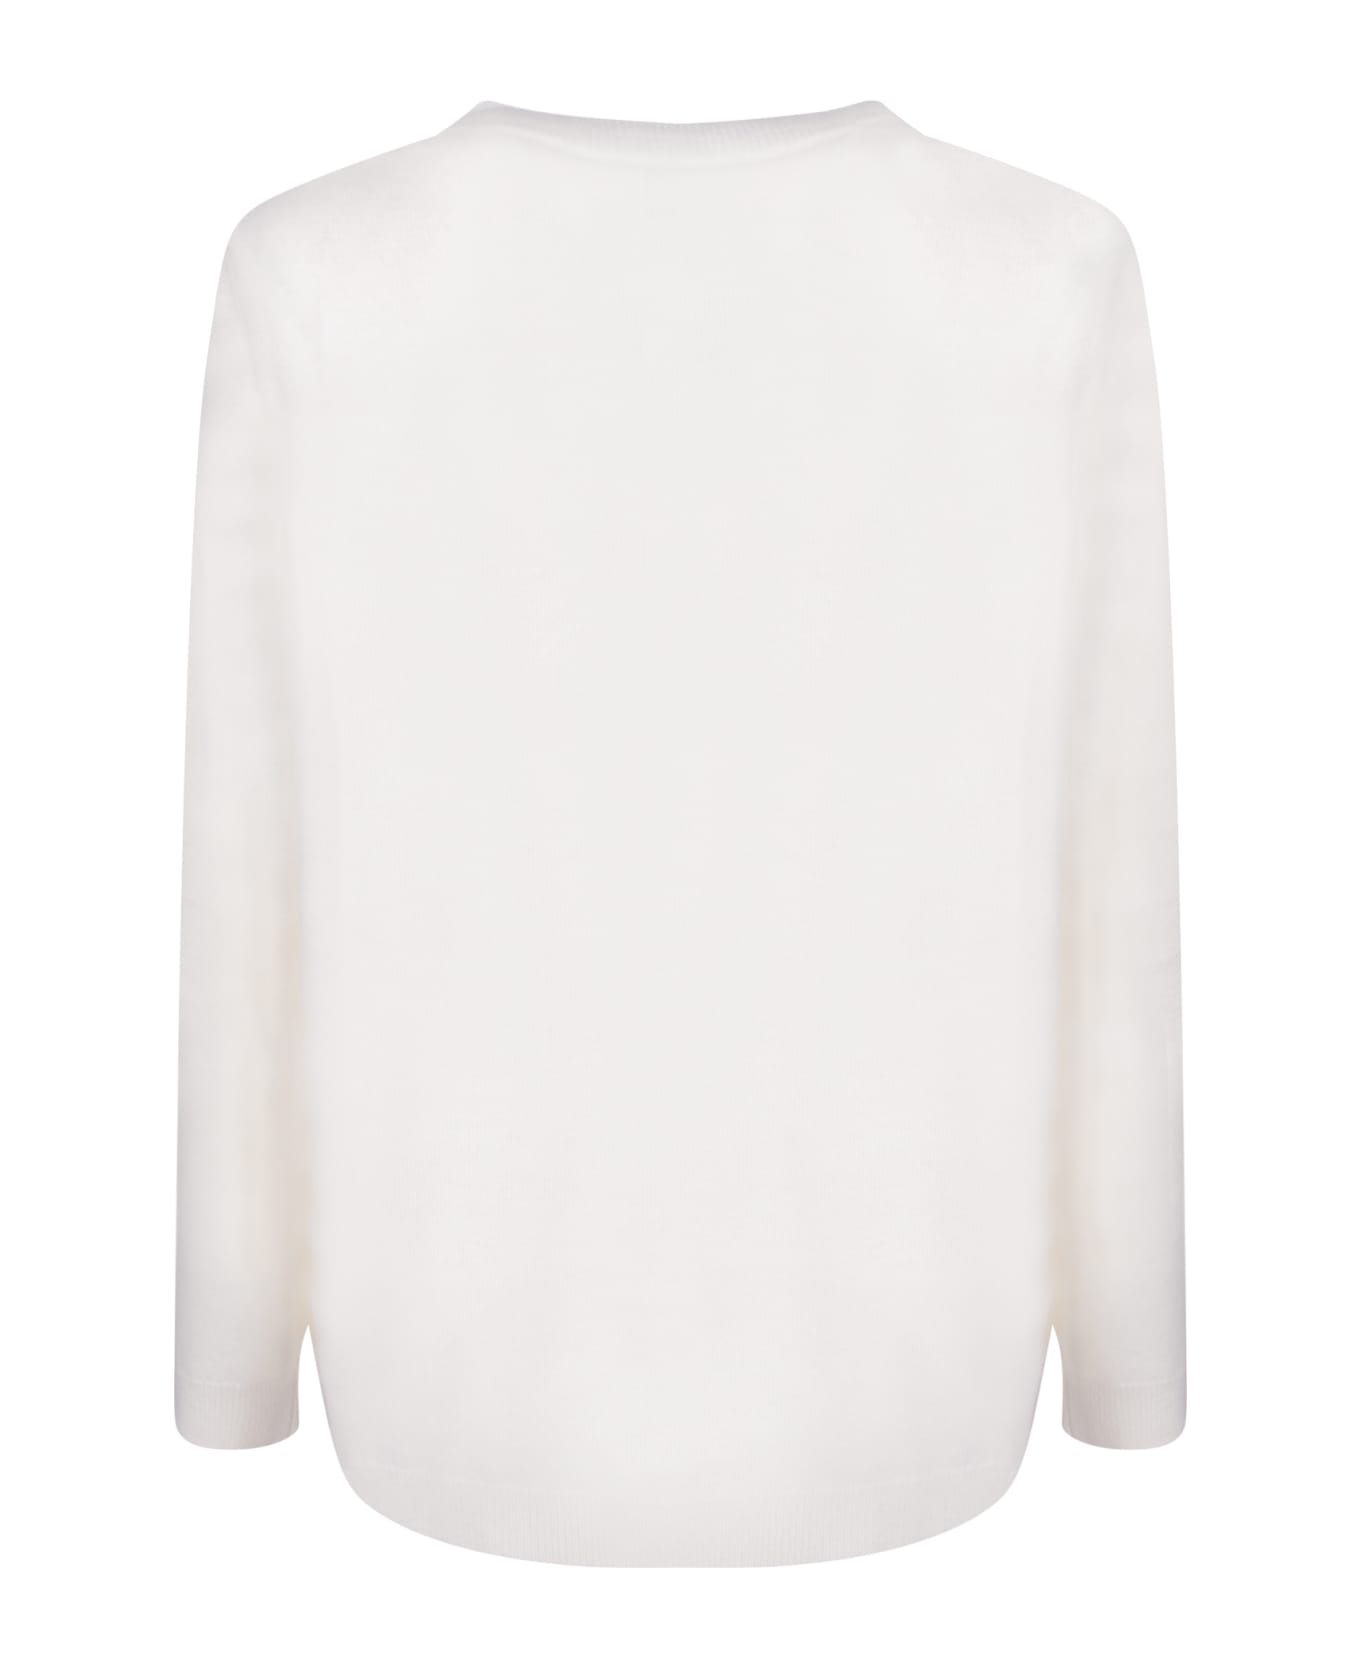 Fabiana Filippi Premium Yarn White Sweater - White